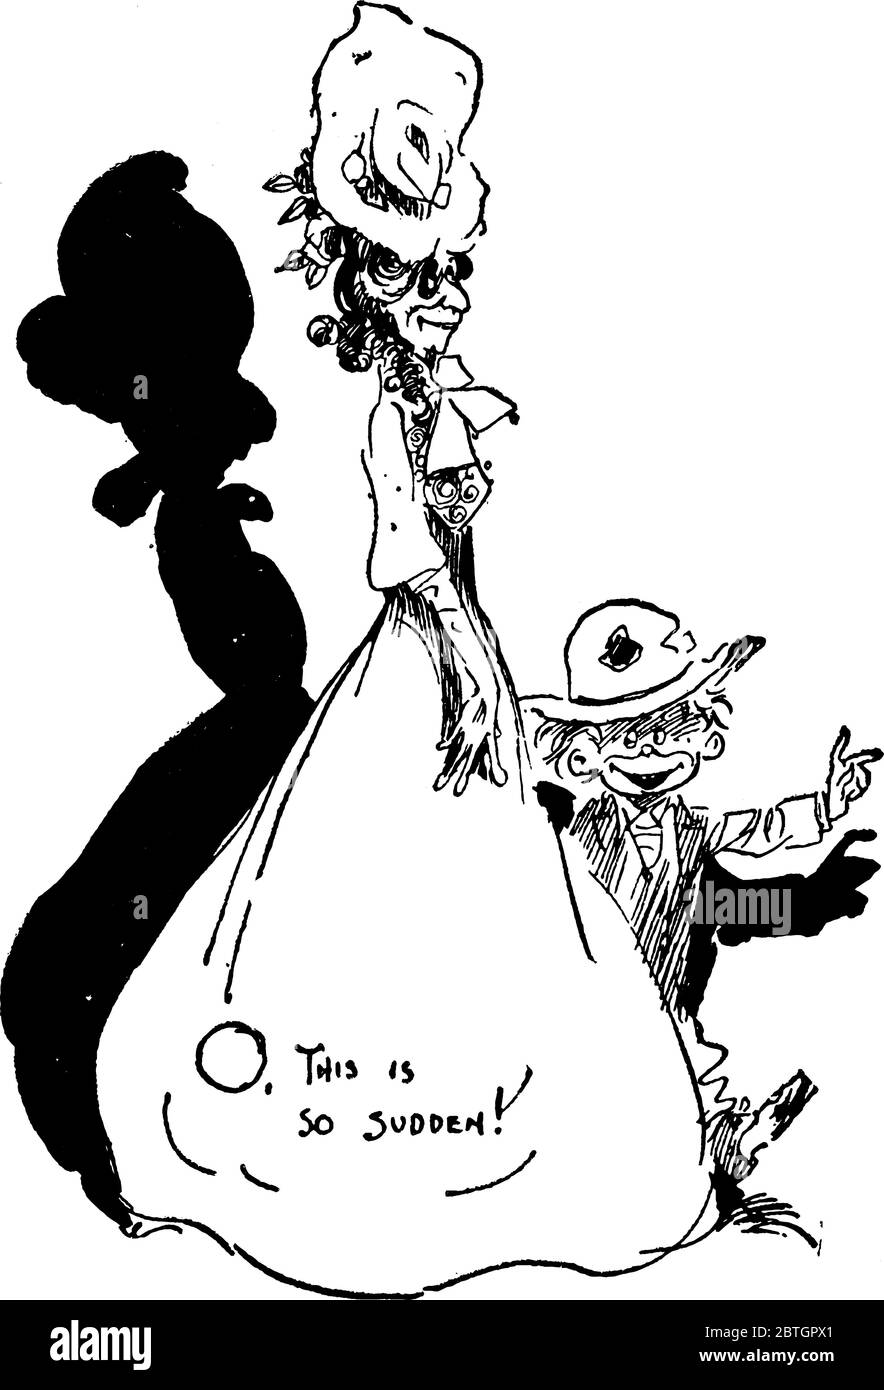 Cartone di una giovane donna ben vestita con un ragazzino, disegno di linea vintage o illustrazione di incisione. Illustrazione Vettoriale